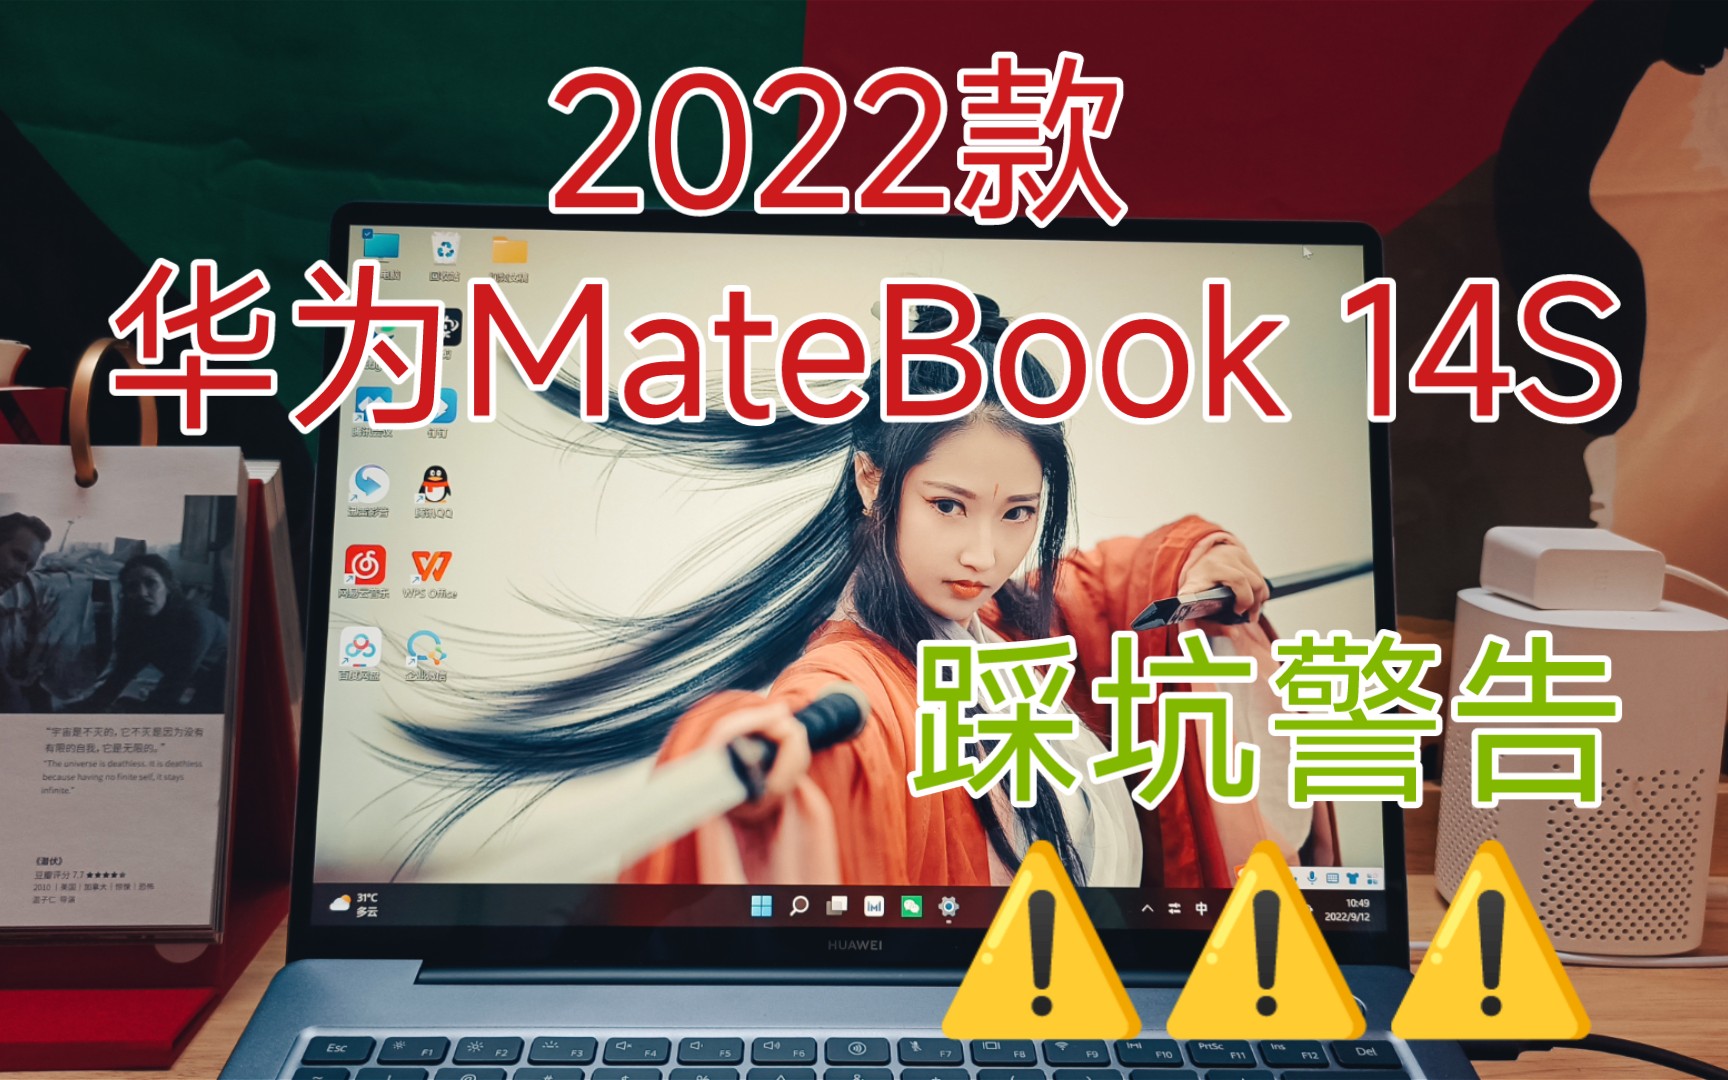 2022款 华为MateBook 14S踩坑警告⚠️⚠️⚠️（三天使用体验，个人网课核心需求不能满足。想退货，退不了）